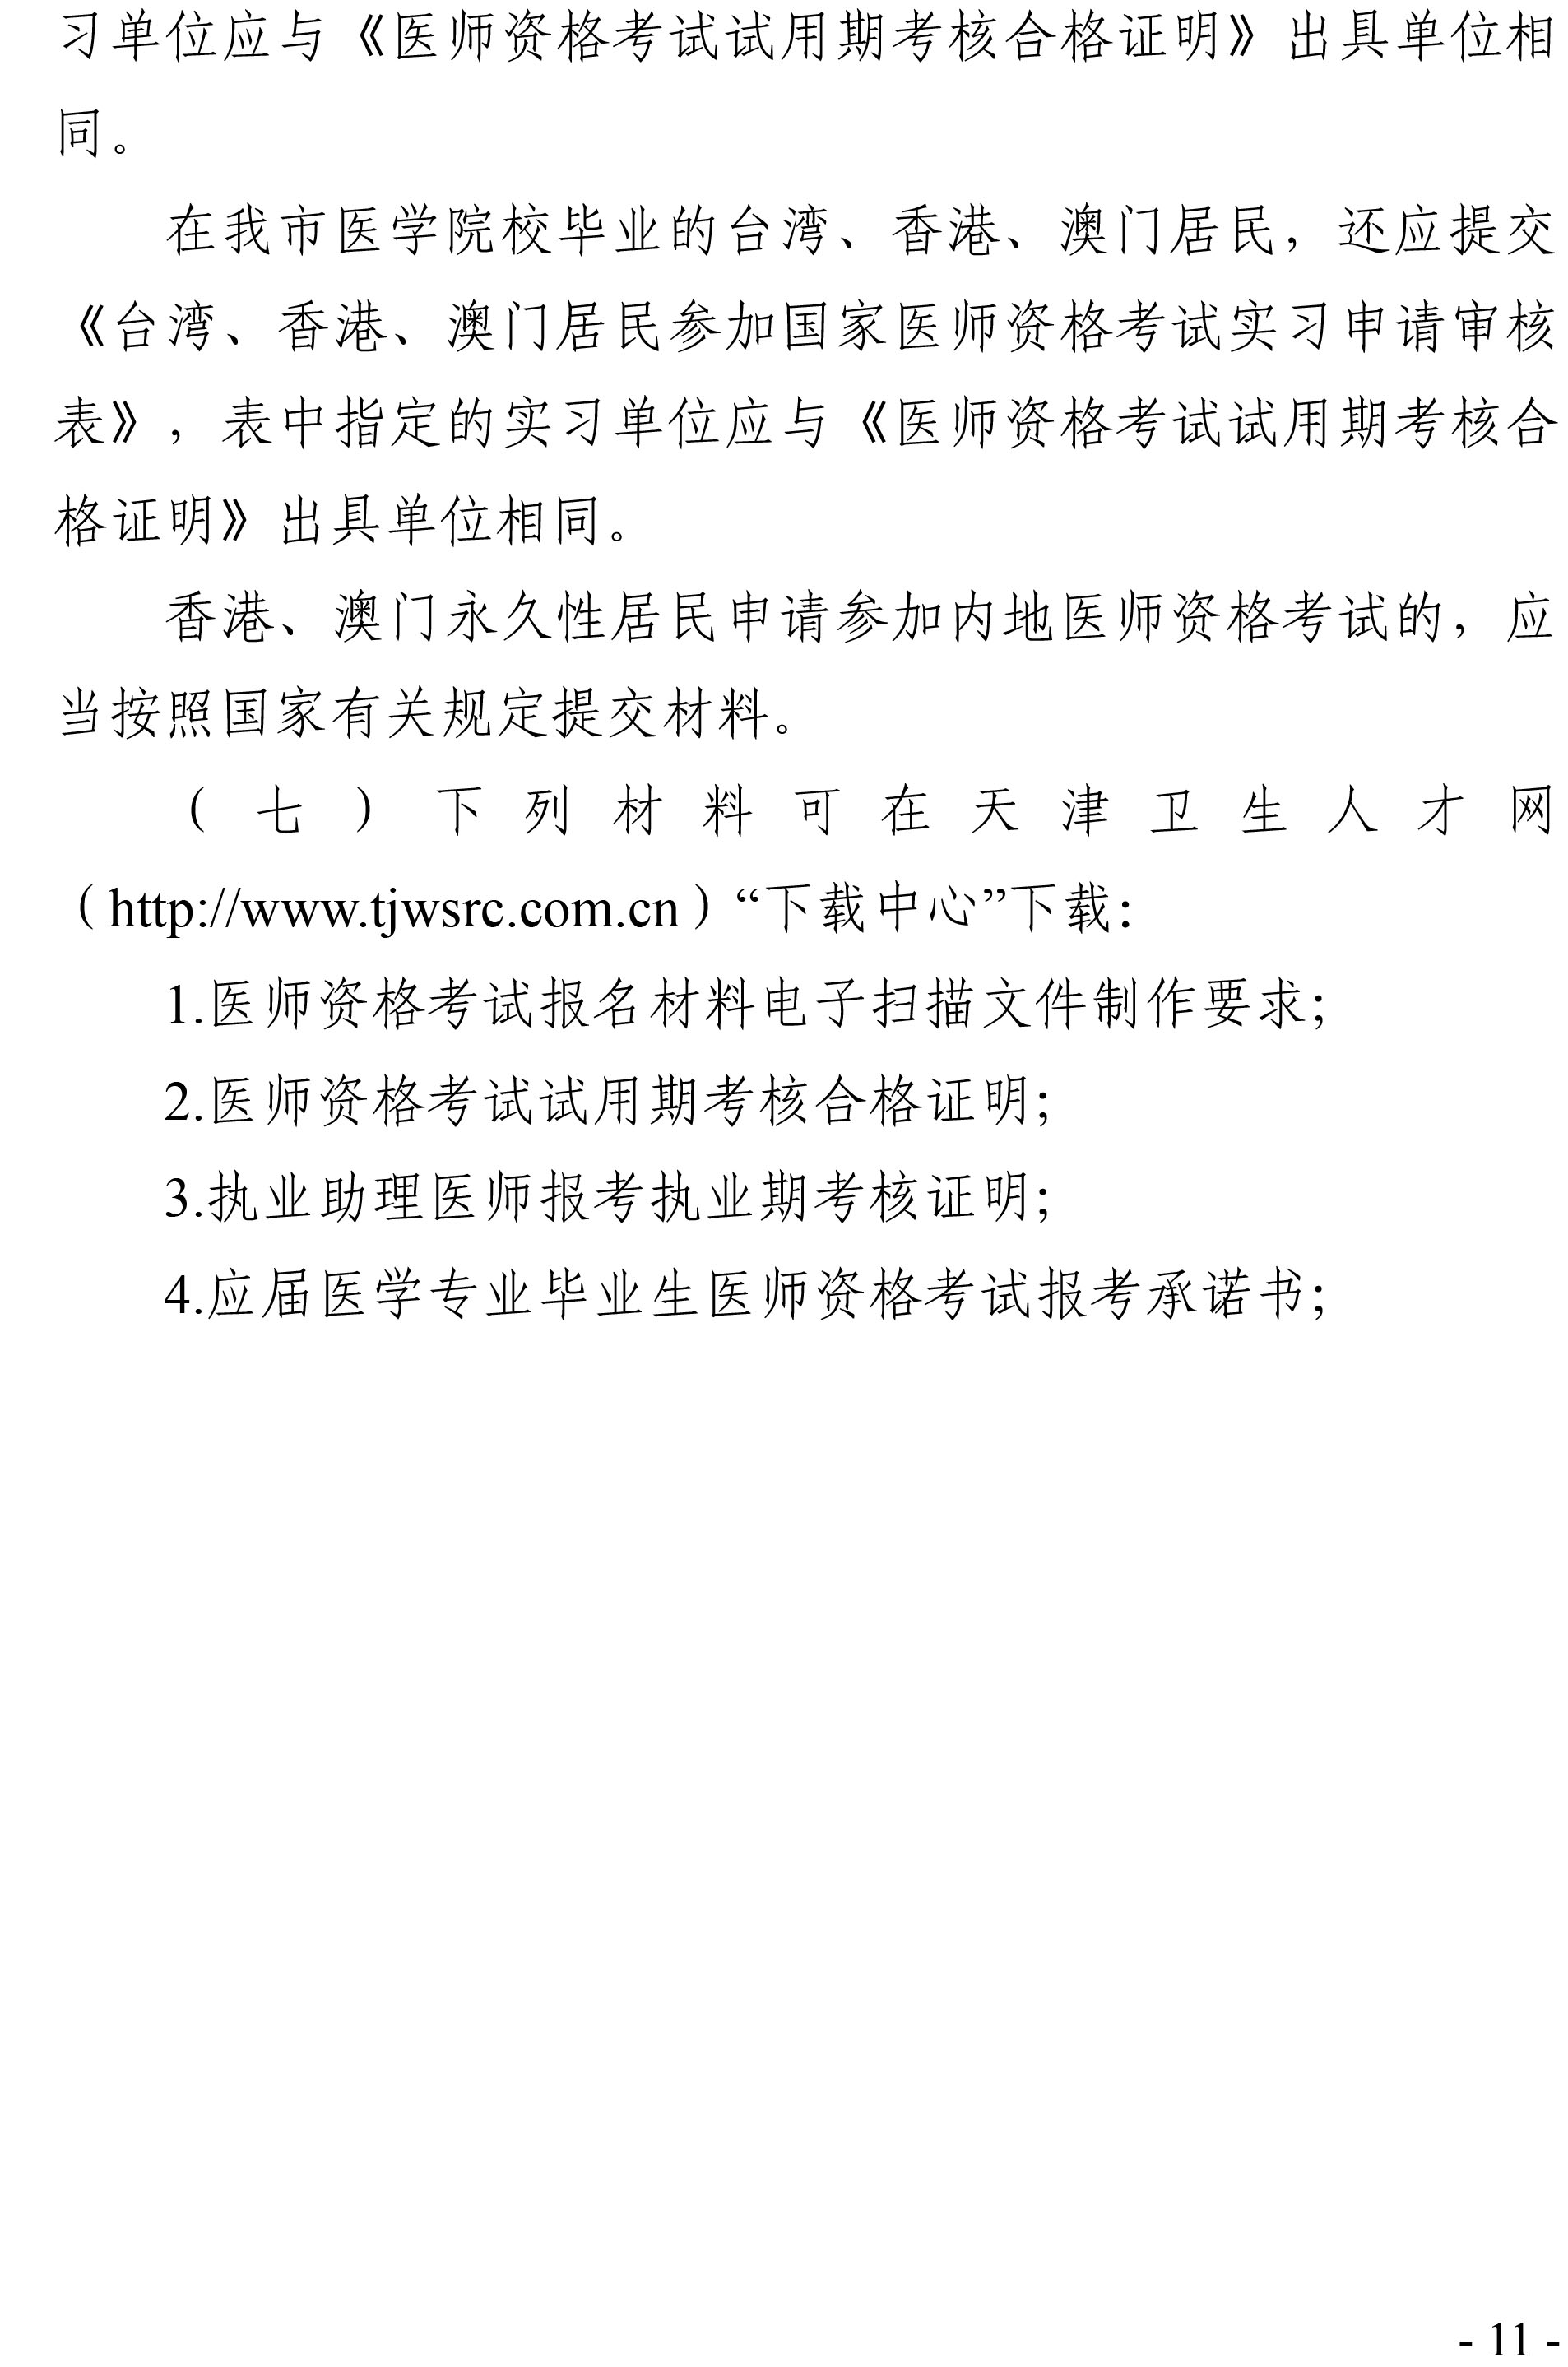 天津考区2020年医师资格考试报名通知